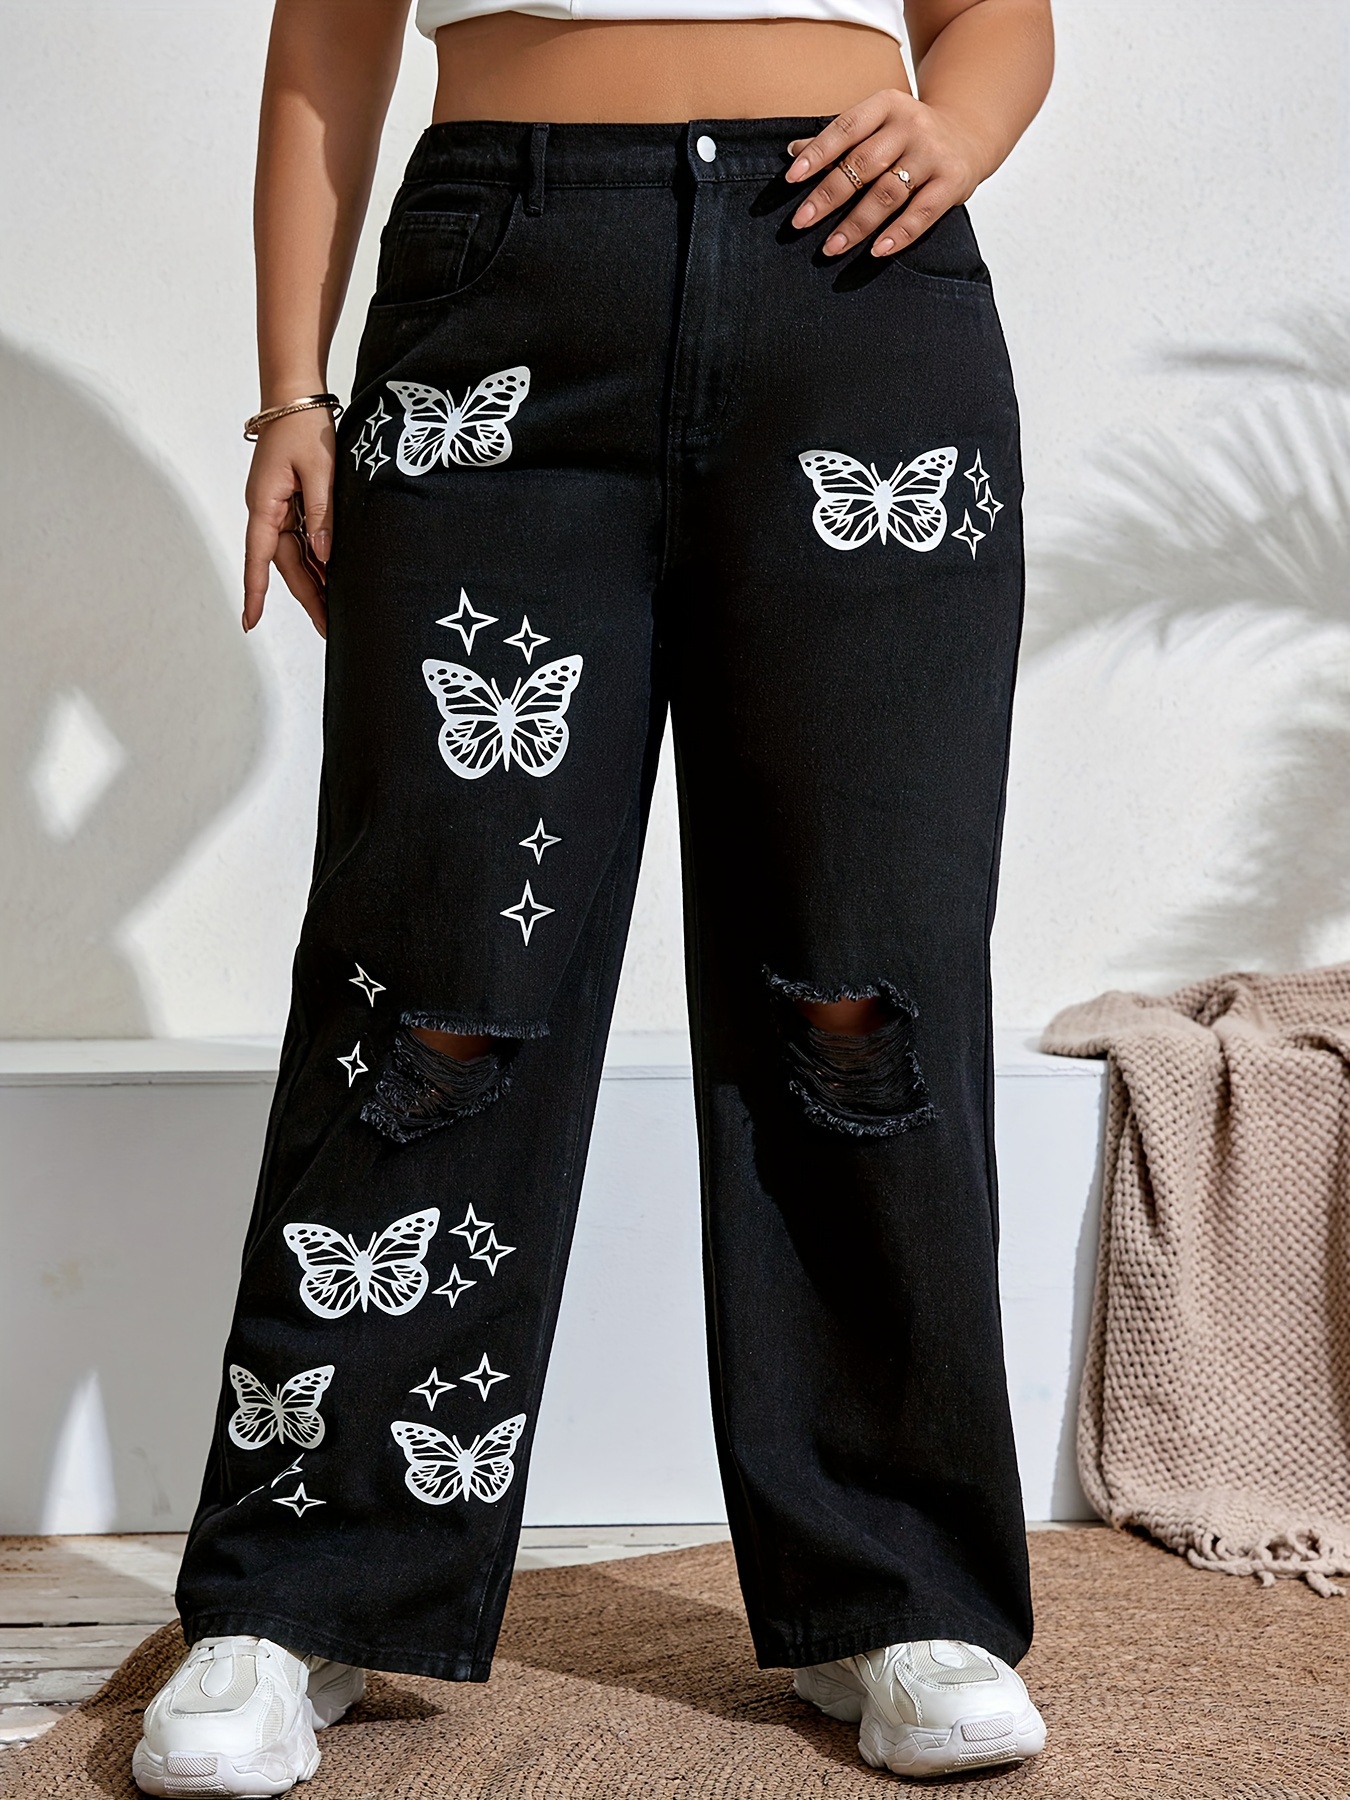 Pantalones deportivos con estampado de mariposa de dos tonos, SHEIN